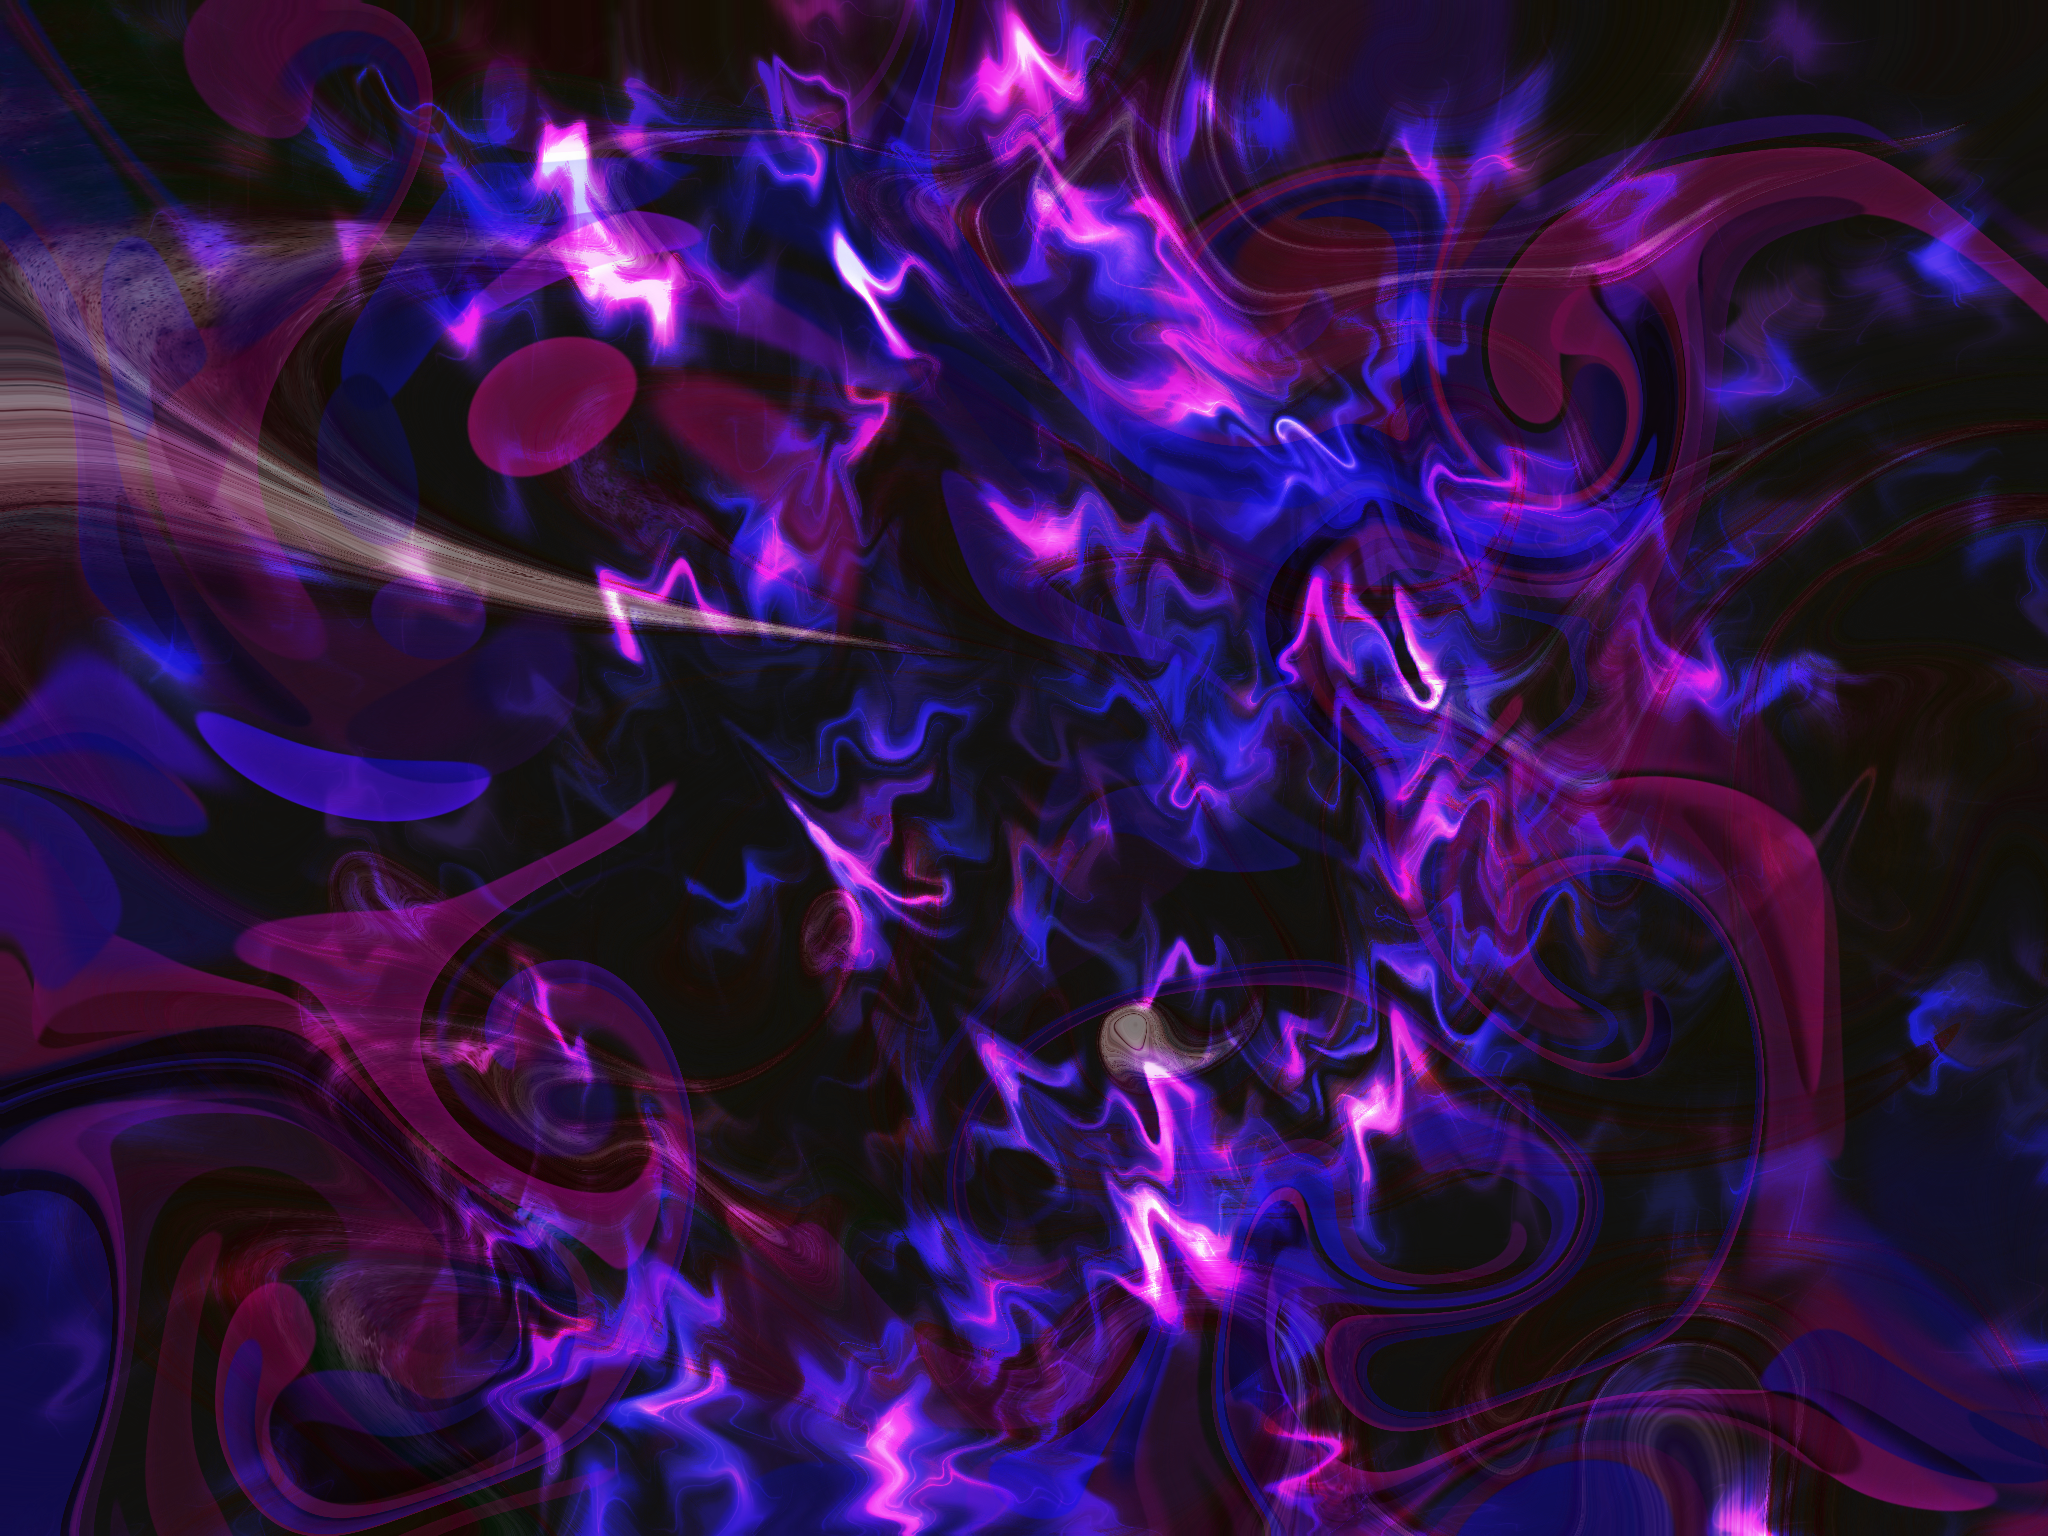 purple swirls and smoke